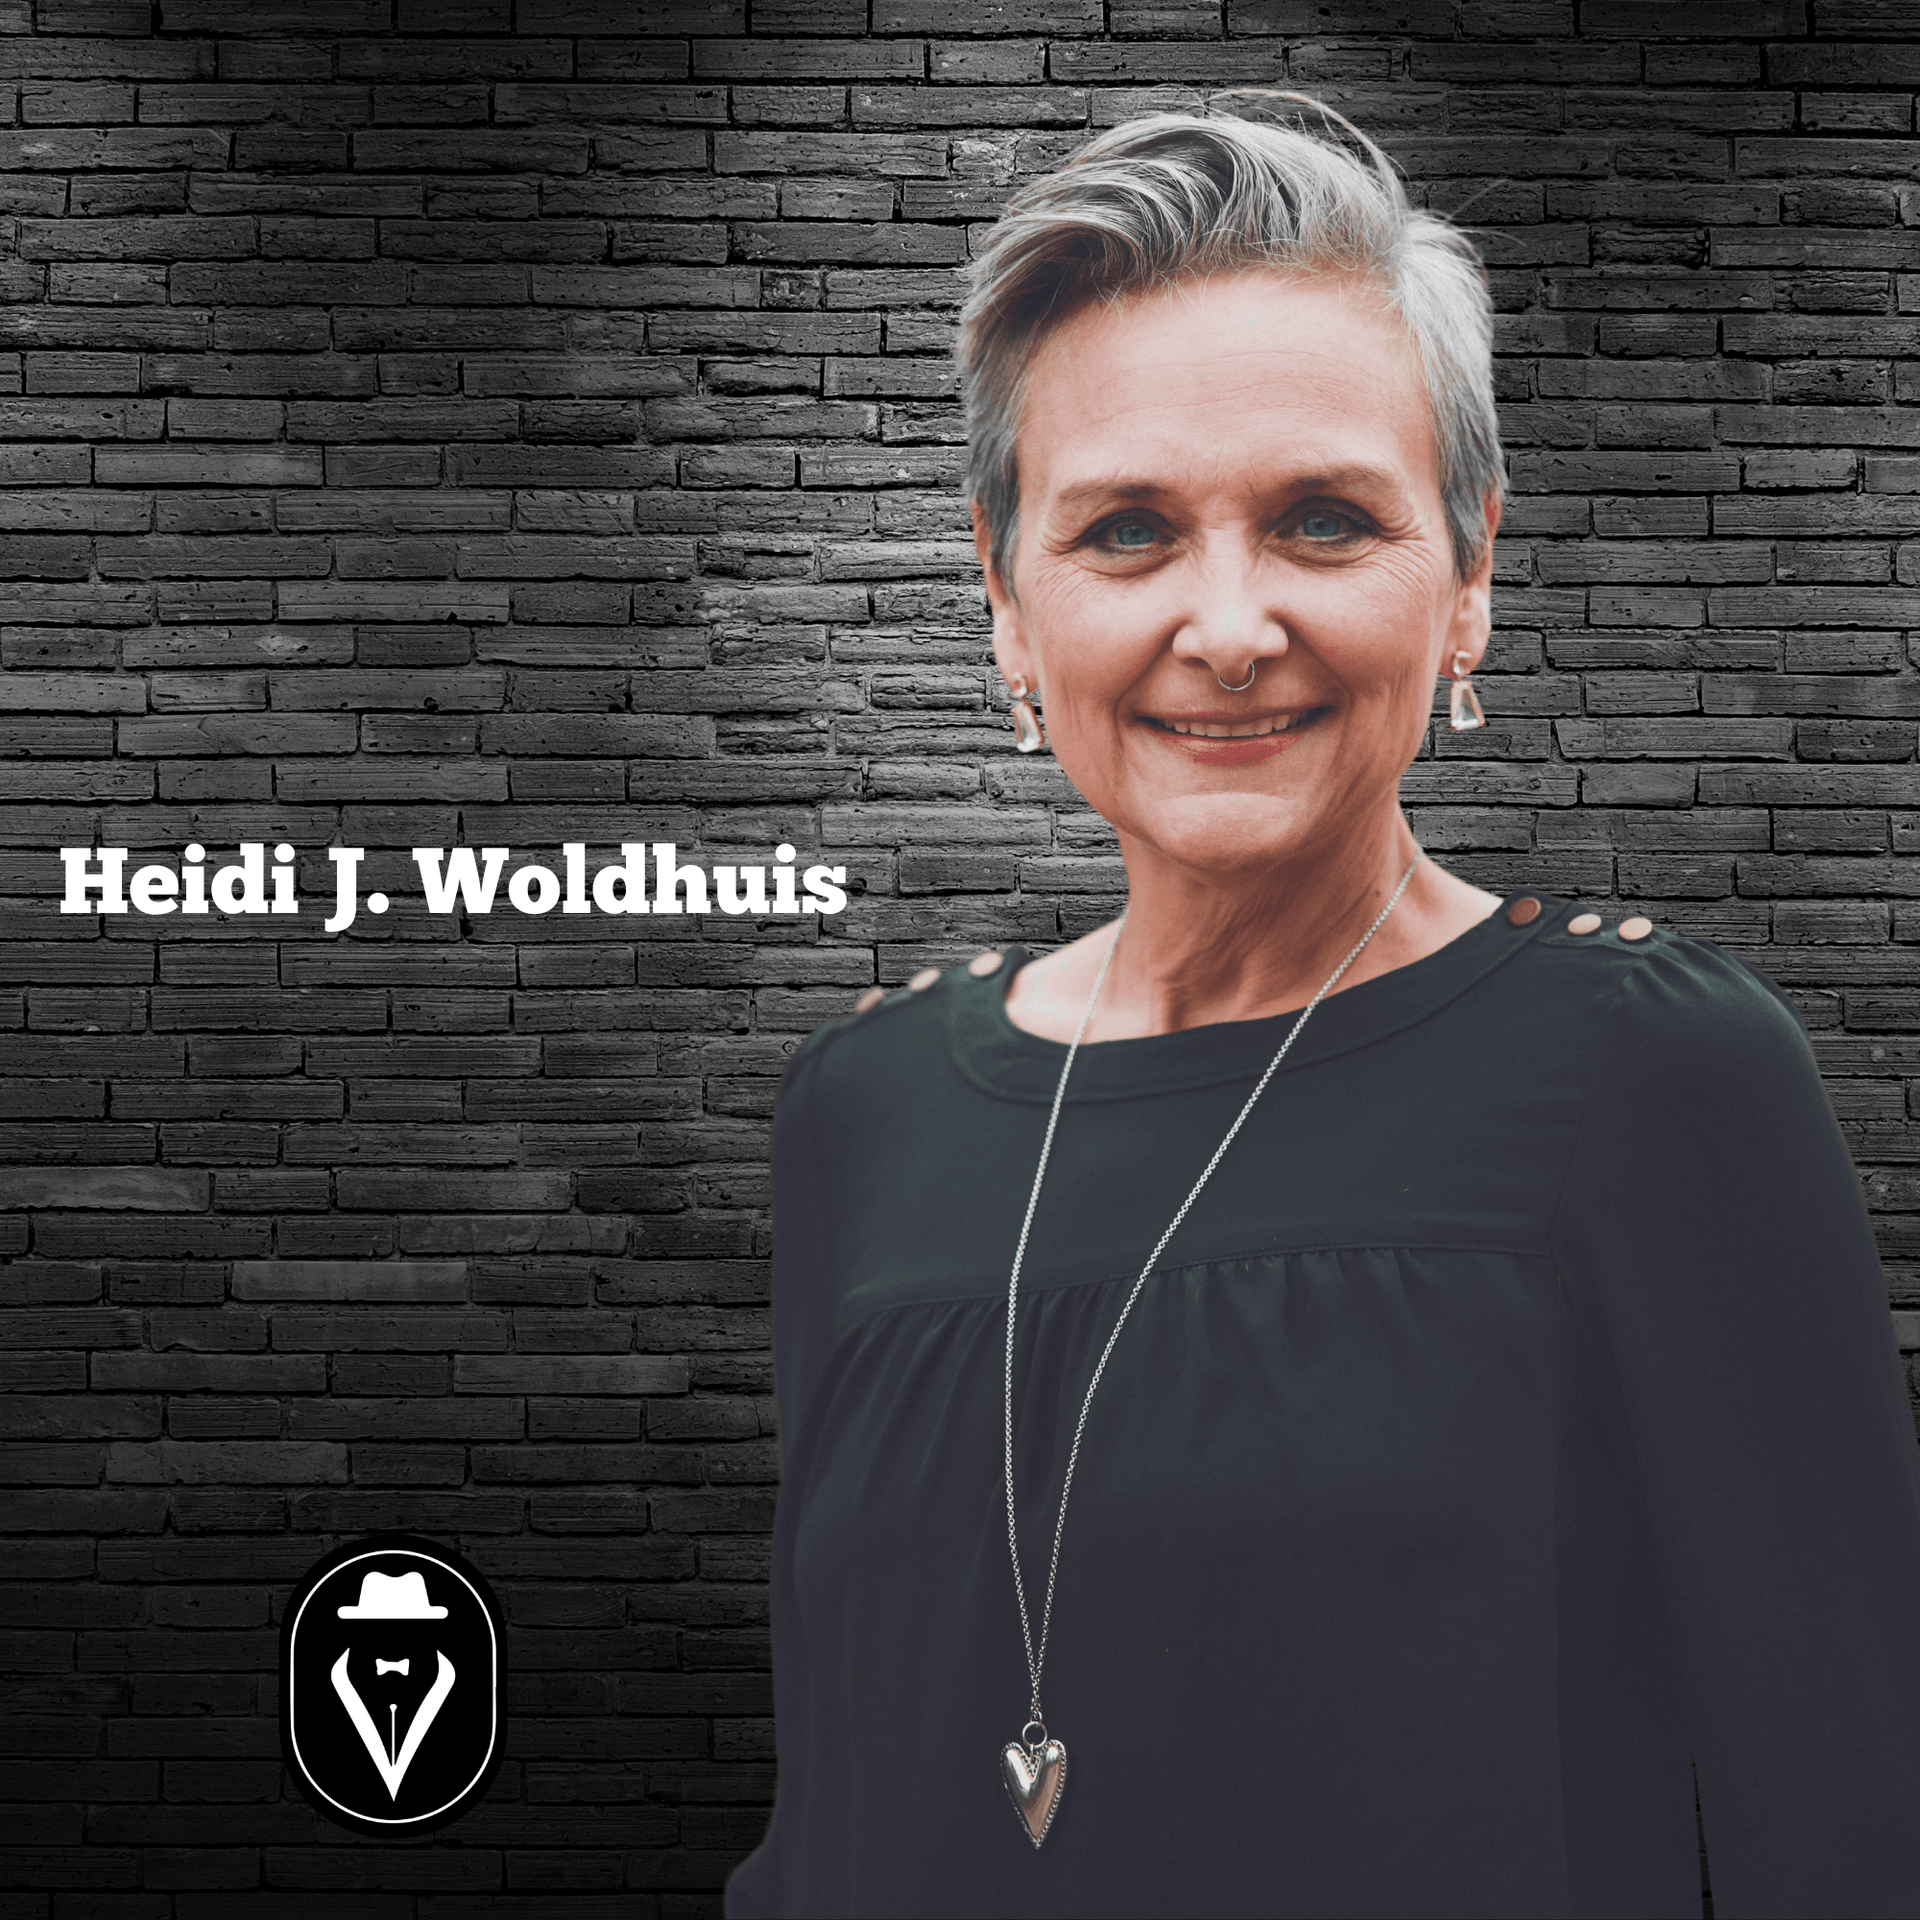 Heidi J. Woldhuis